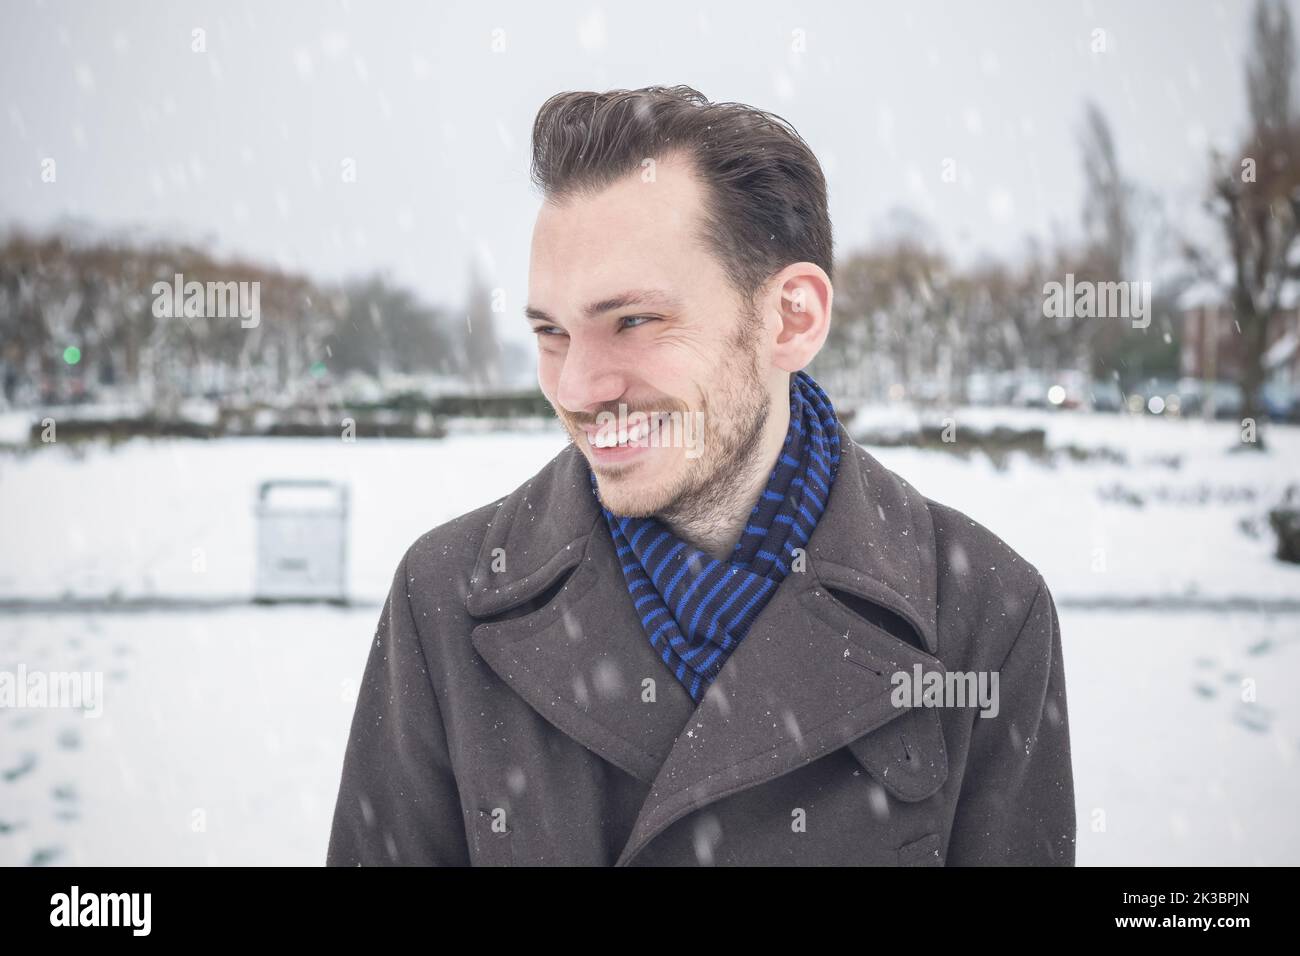 Portrait d'un jeune homme beau avec une barbe souriante en riant dans la neige d'hiver Banque D'Images